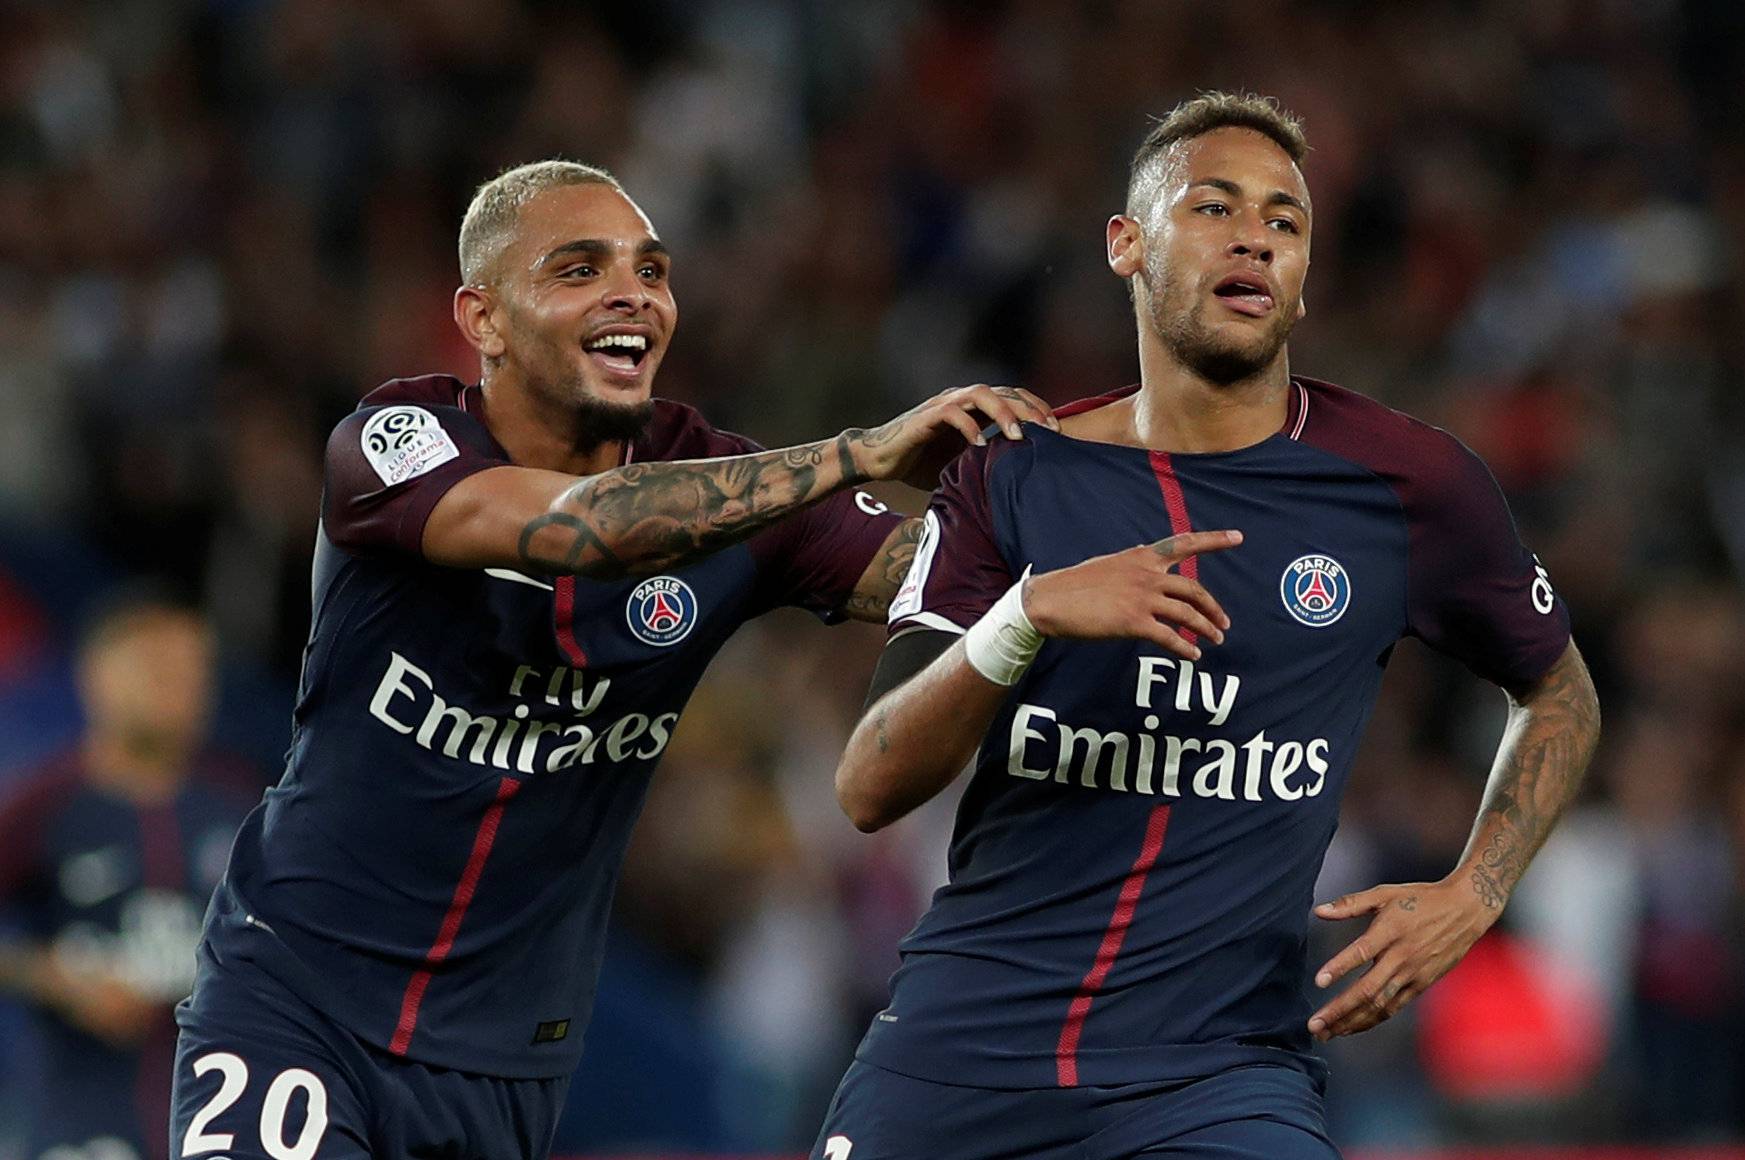 Ligue 1 - Paris St Germain vs Toulouse